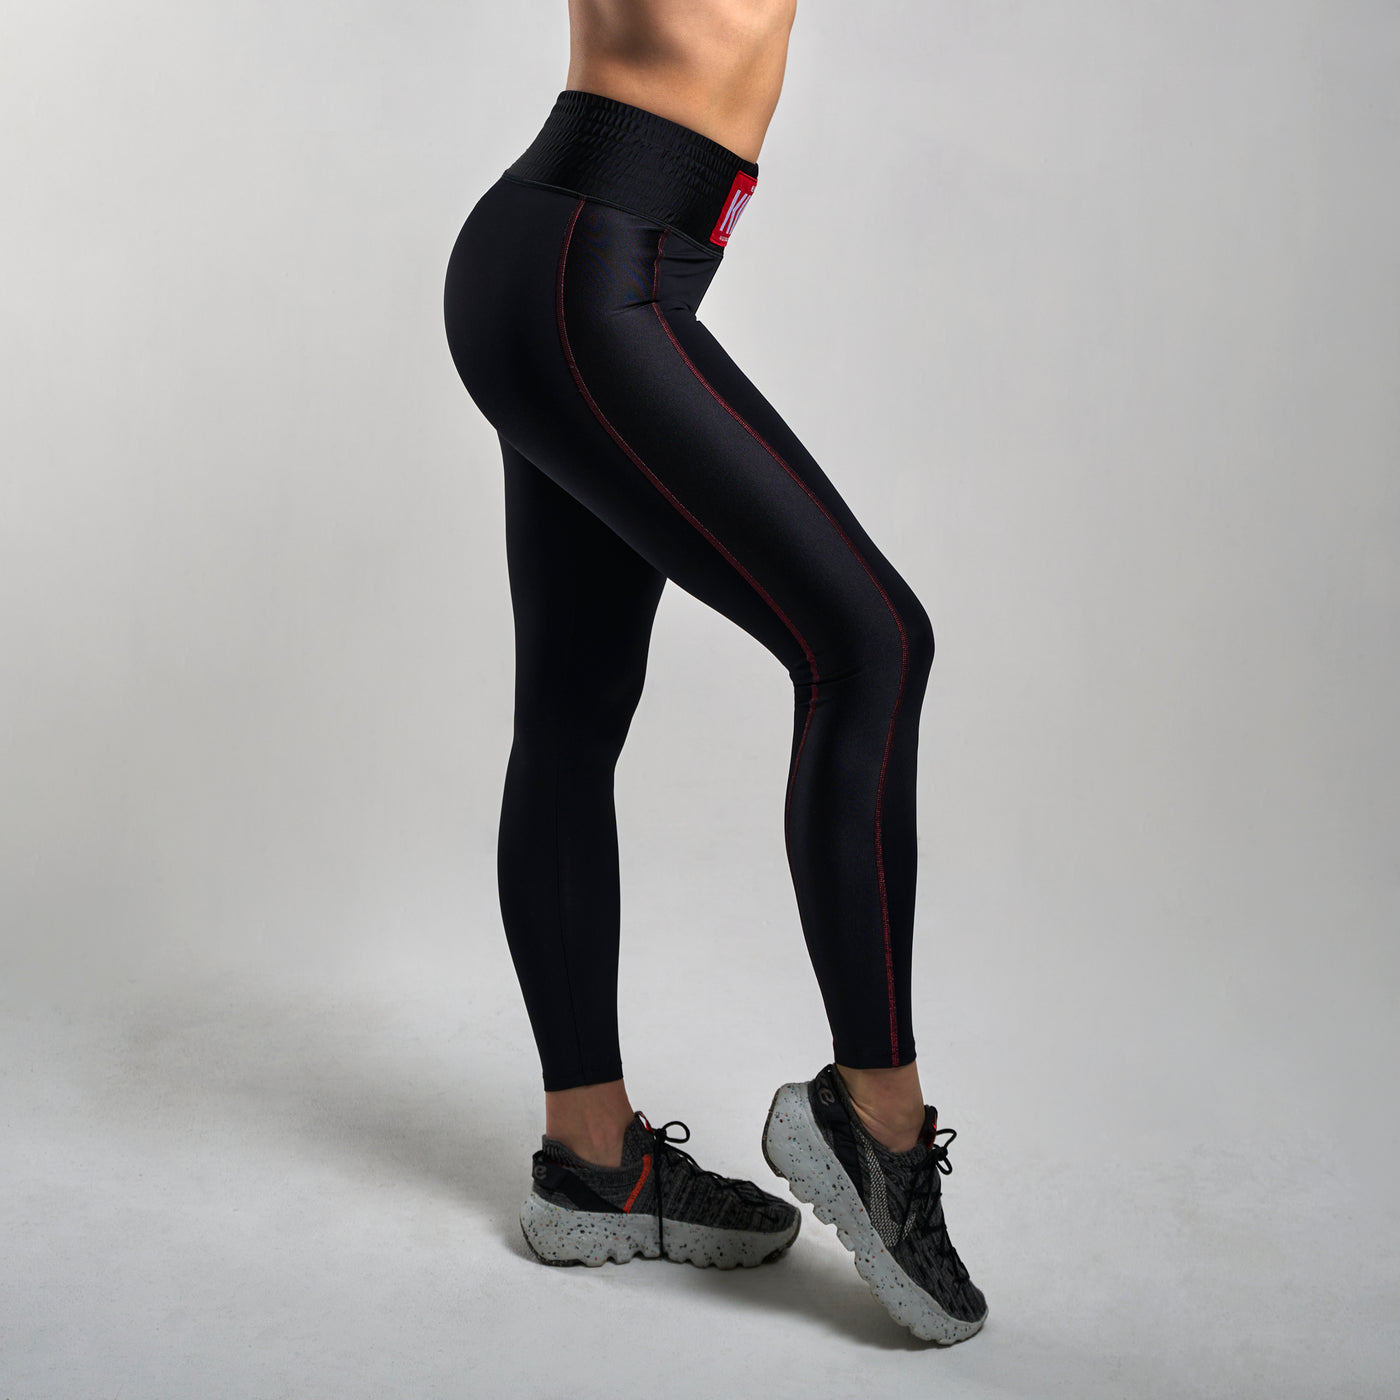 Kick-in legging in Black - Redd Edition